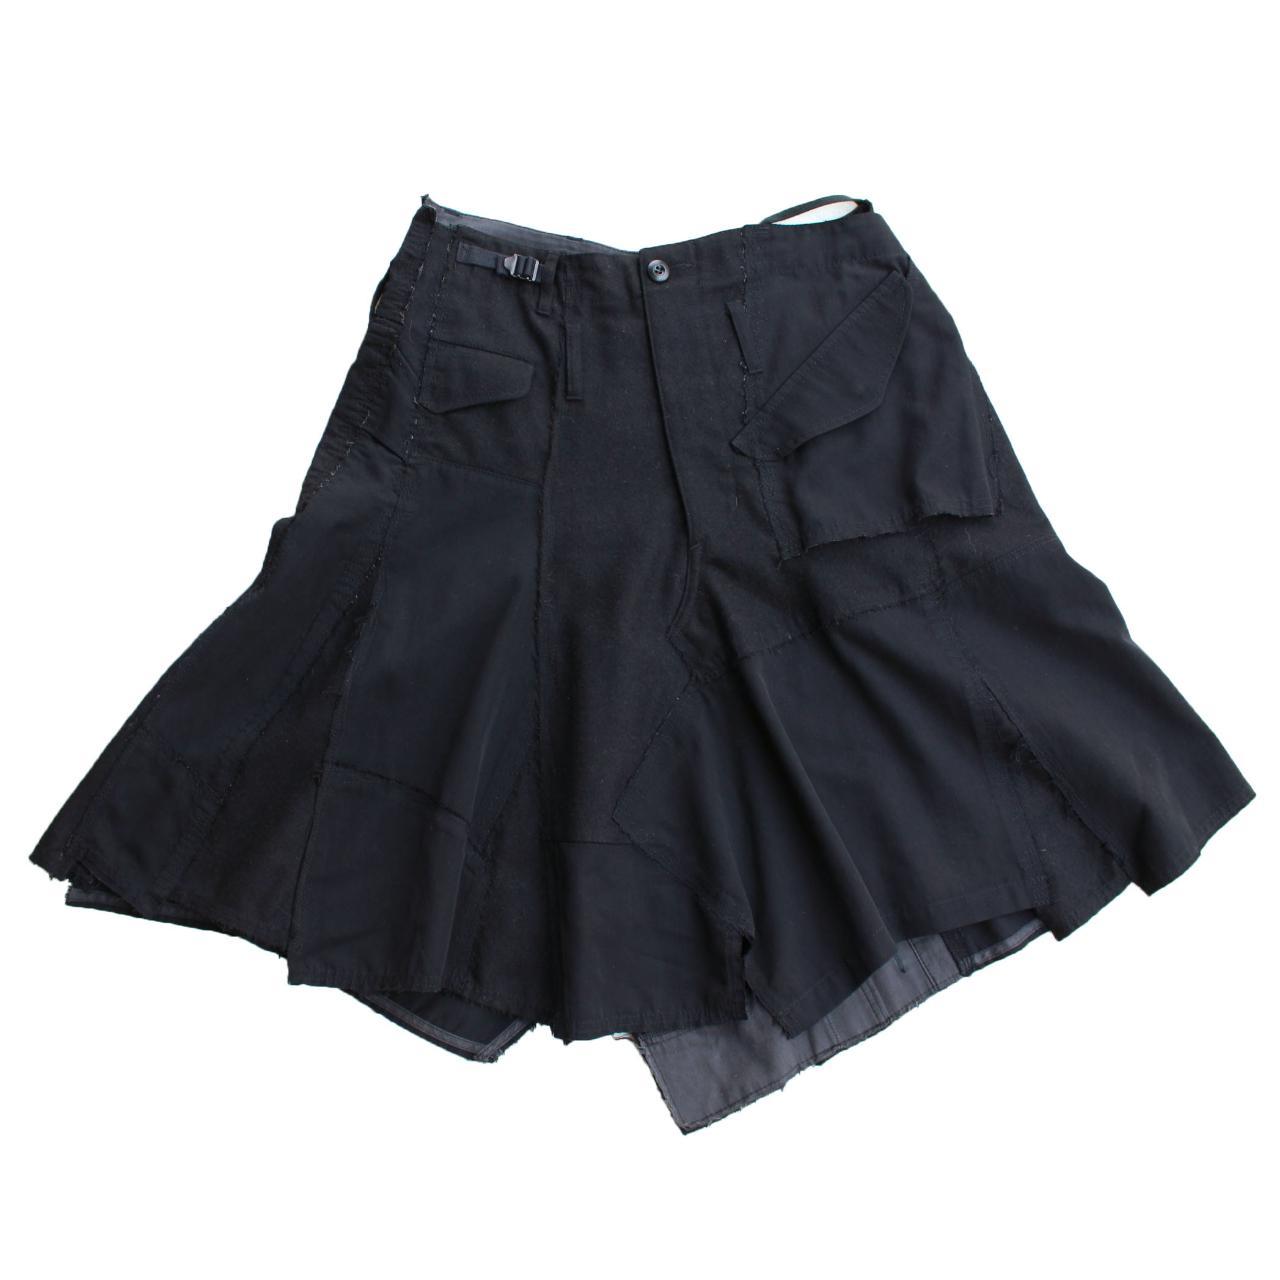 ️F/W 2006 Junya Watanabe Reconstructed Skirt ️Made... - Depop